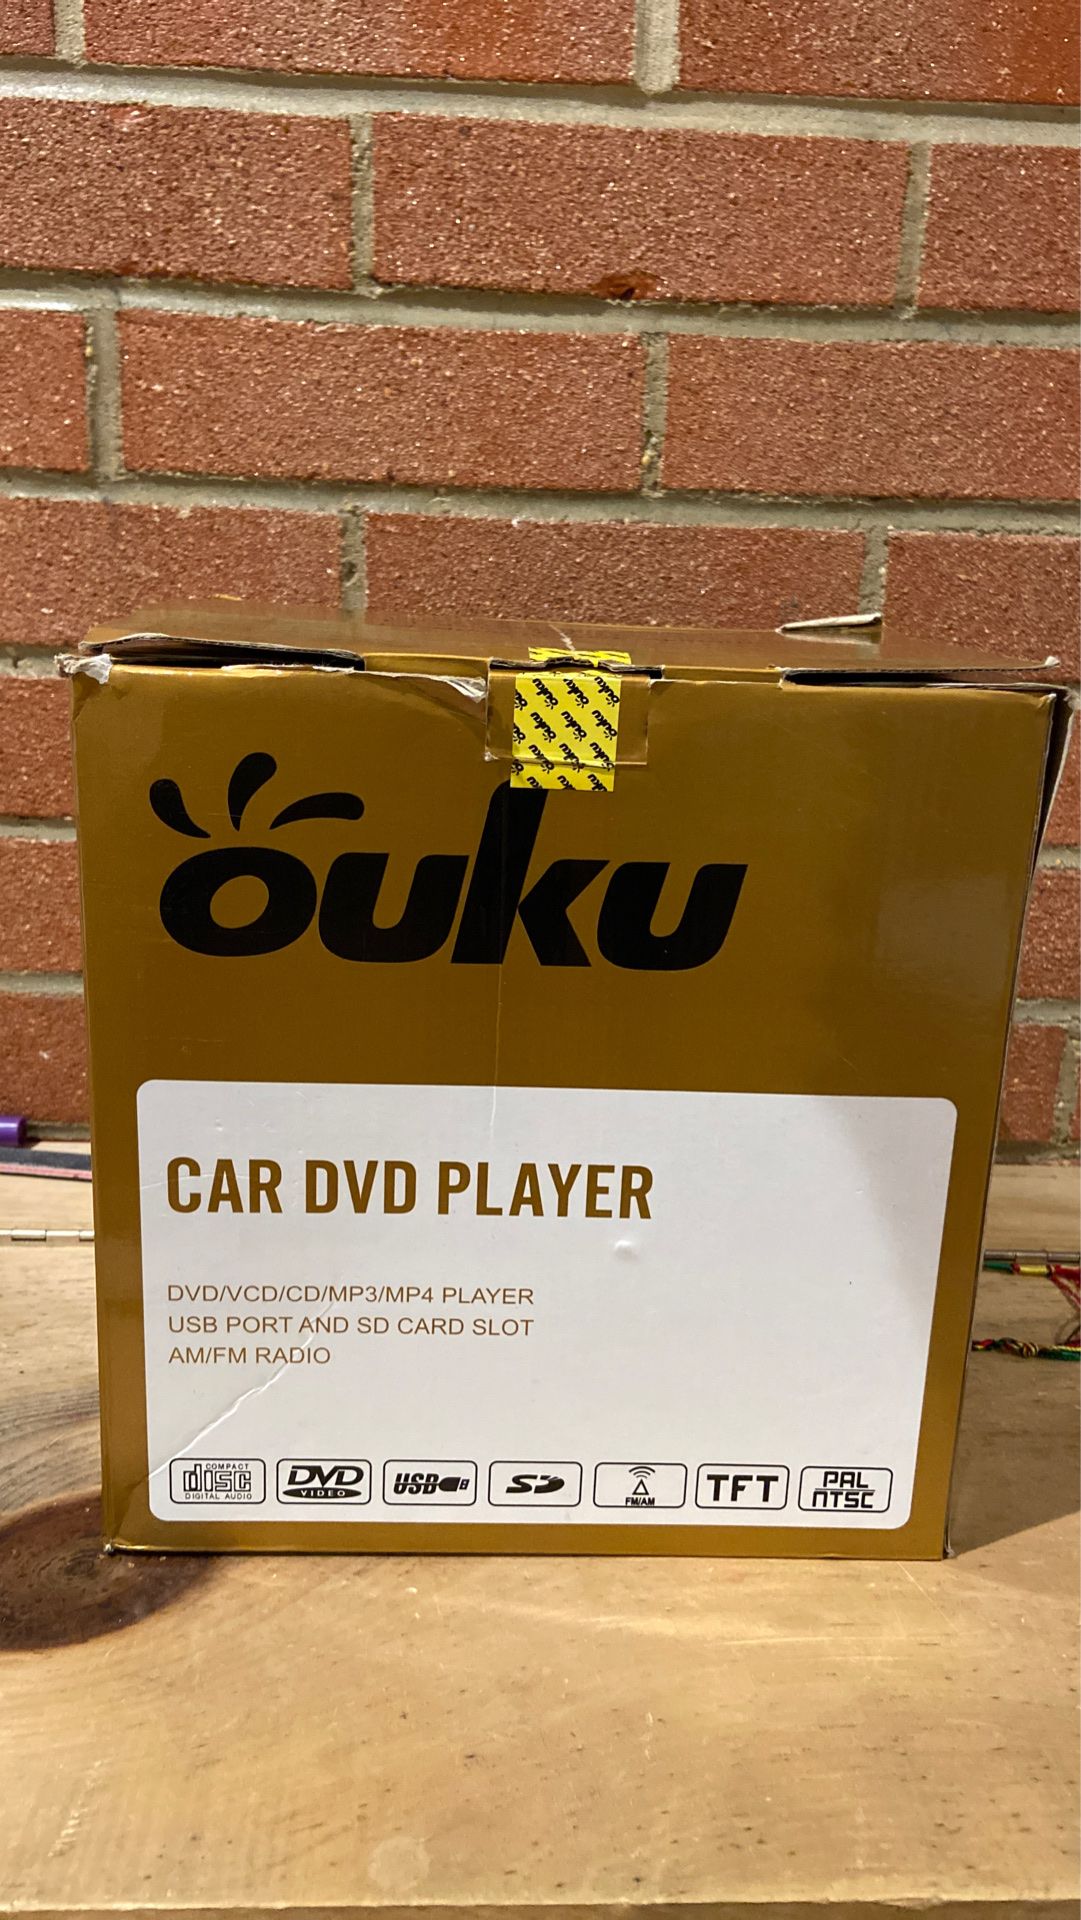 Ouku car DVD player